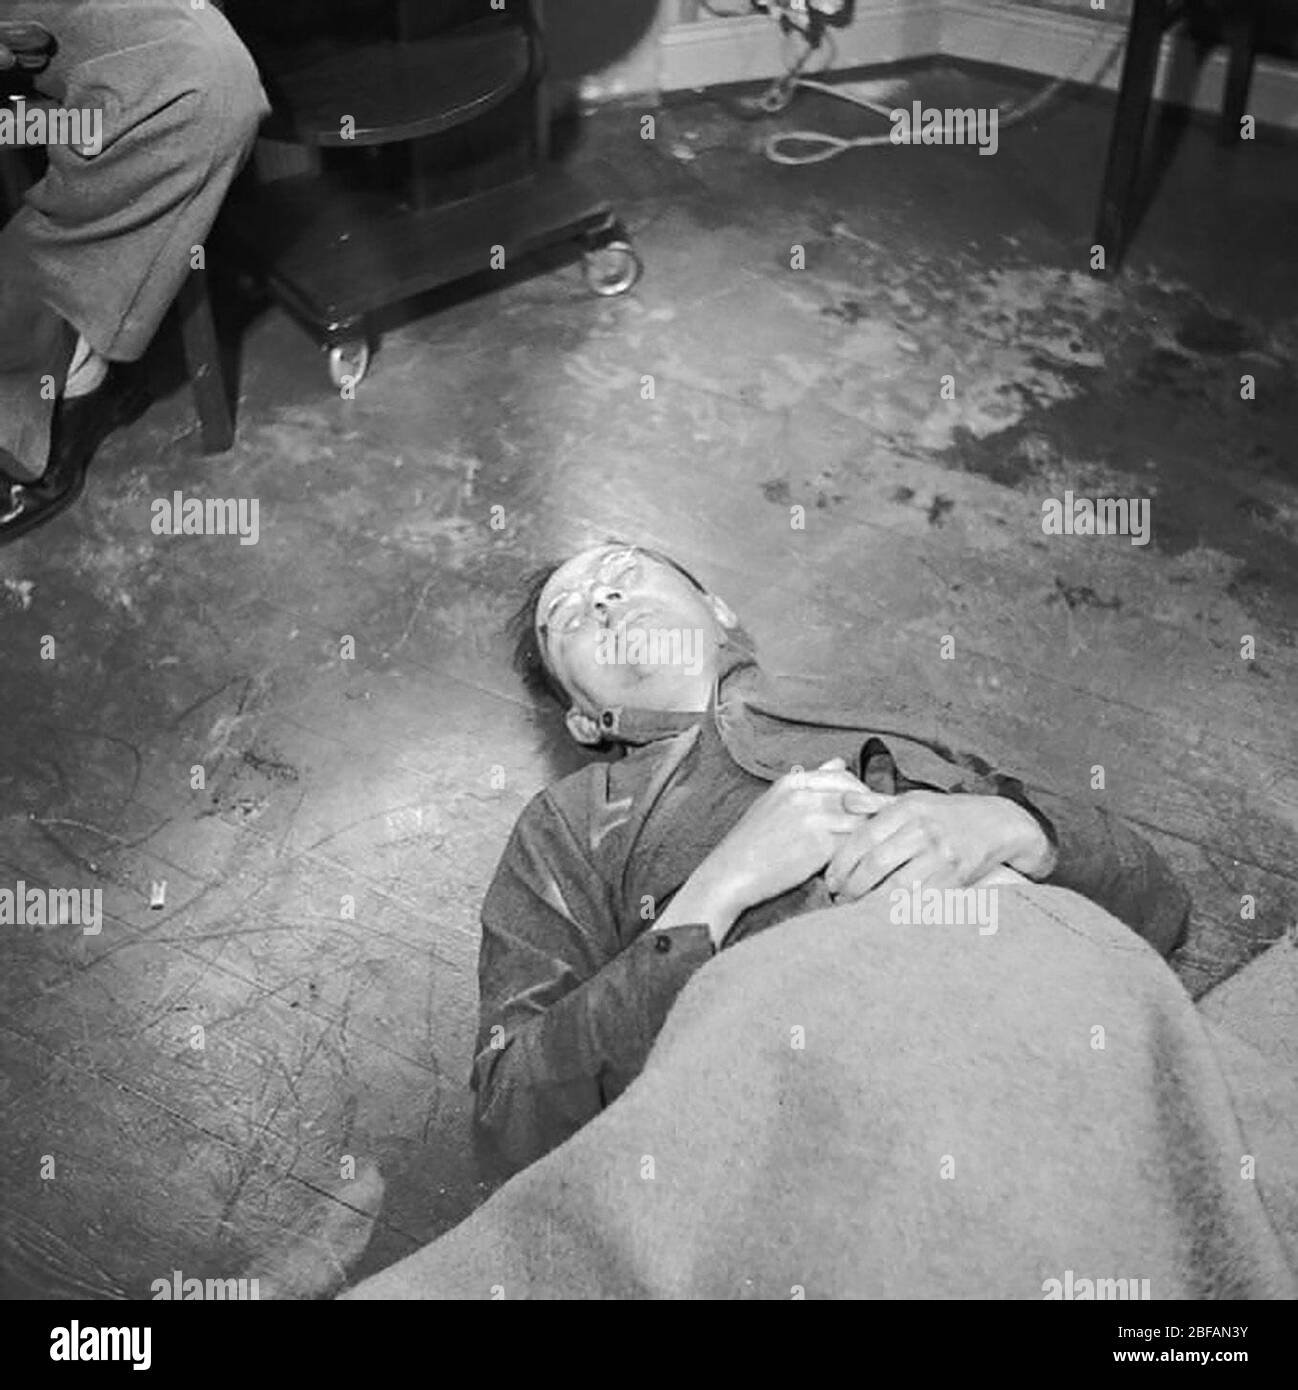 Von Himmler, Leiche auf dem Boden liegen, Selbstmord, Cyanid, Vergiftungen, 1945 Stockfoto